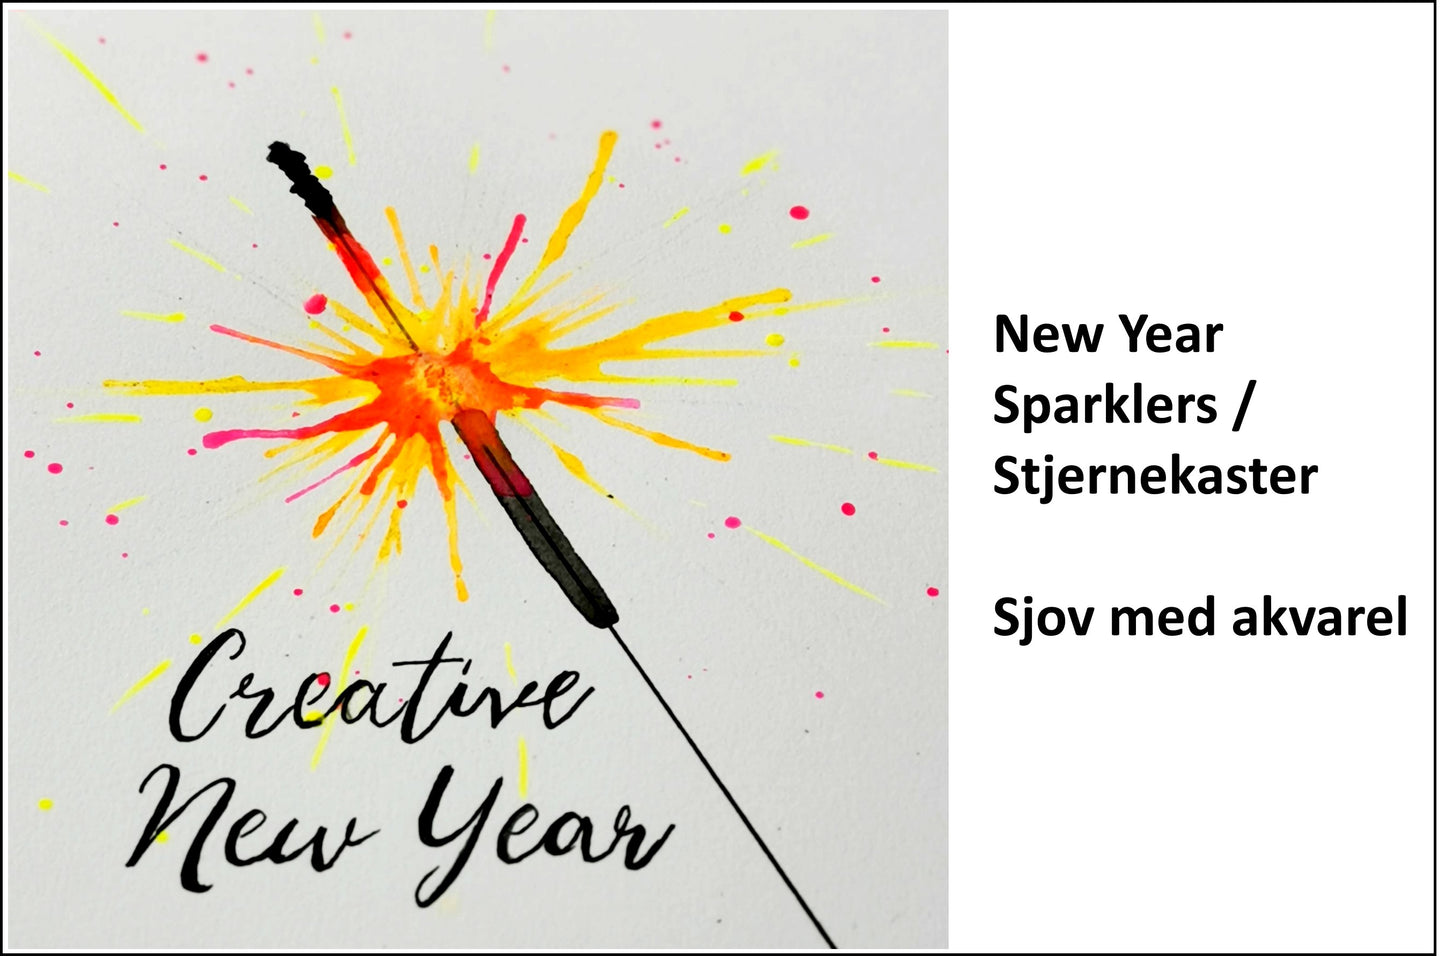 Creative hour - NEW YEAR SPARKLER / Stjernekaster